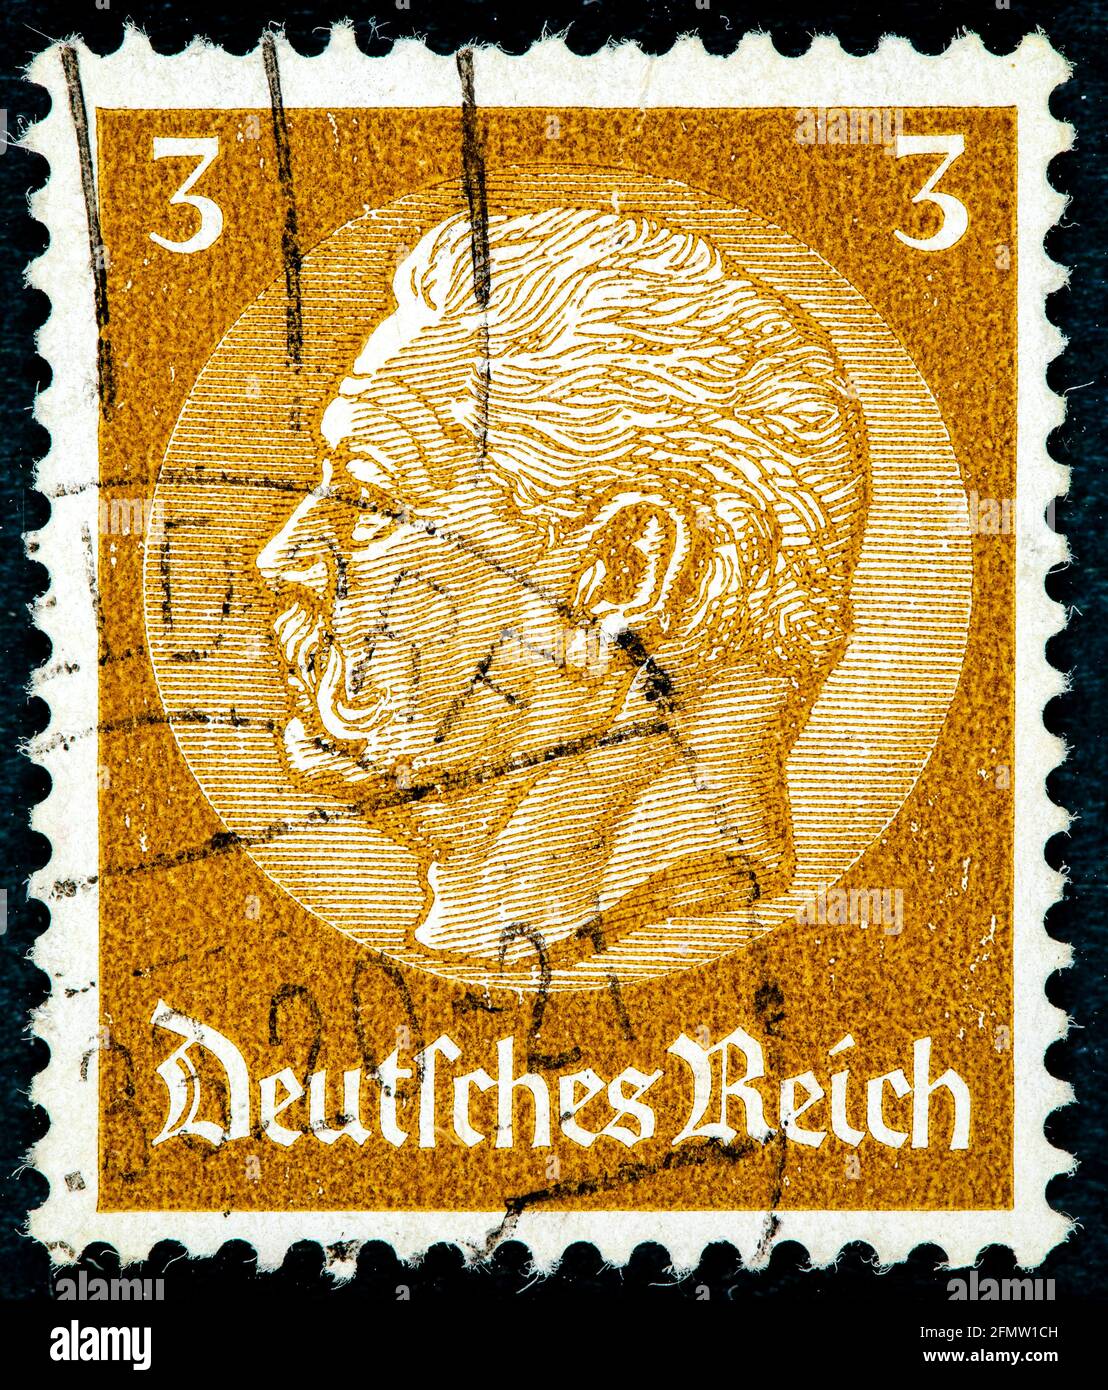 DEUTSCHLAND - UM 1933: Eine in Deutschland gedruckte Briefmarke zeigt das Porträt von Paul von Hindenburg (2. Reichspräsident), ohne Inschrift, aus seri Stockfoto